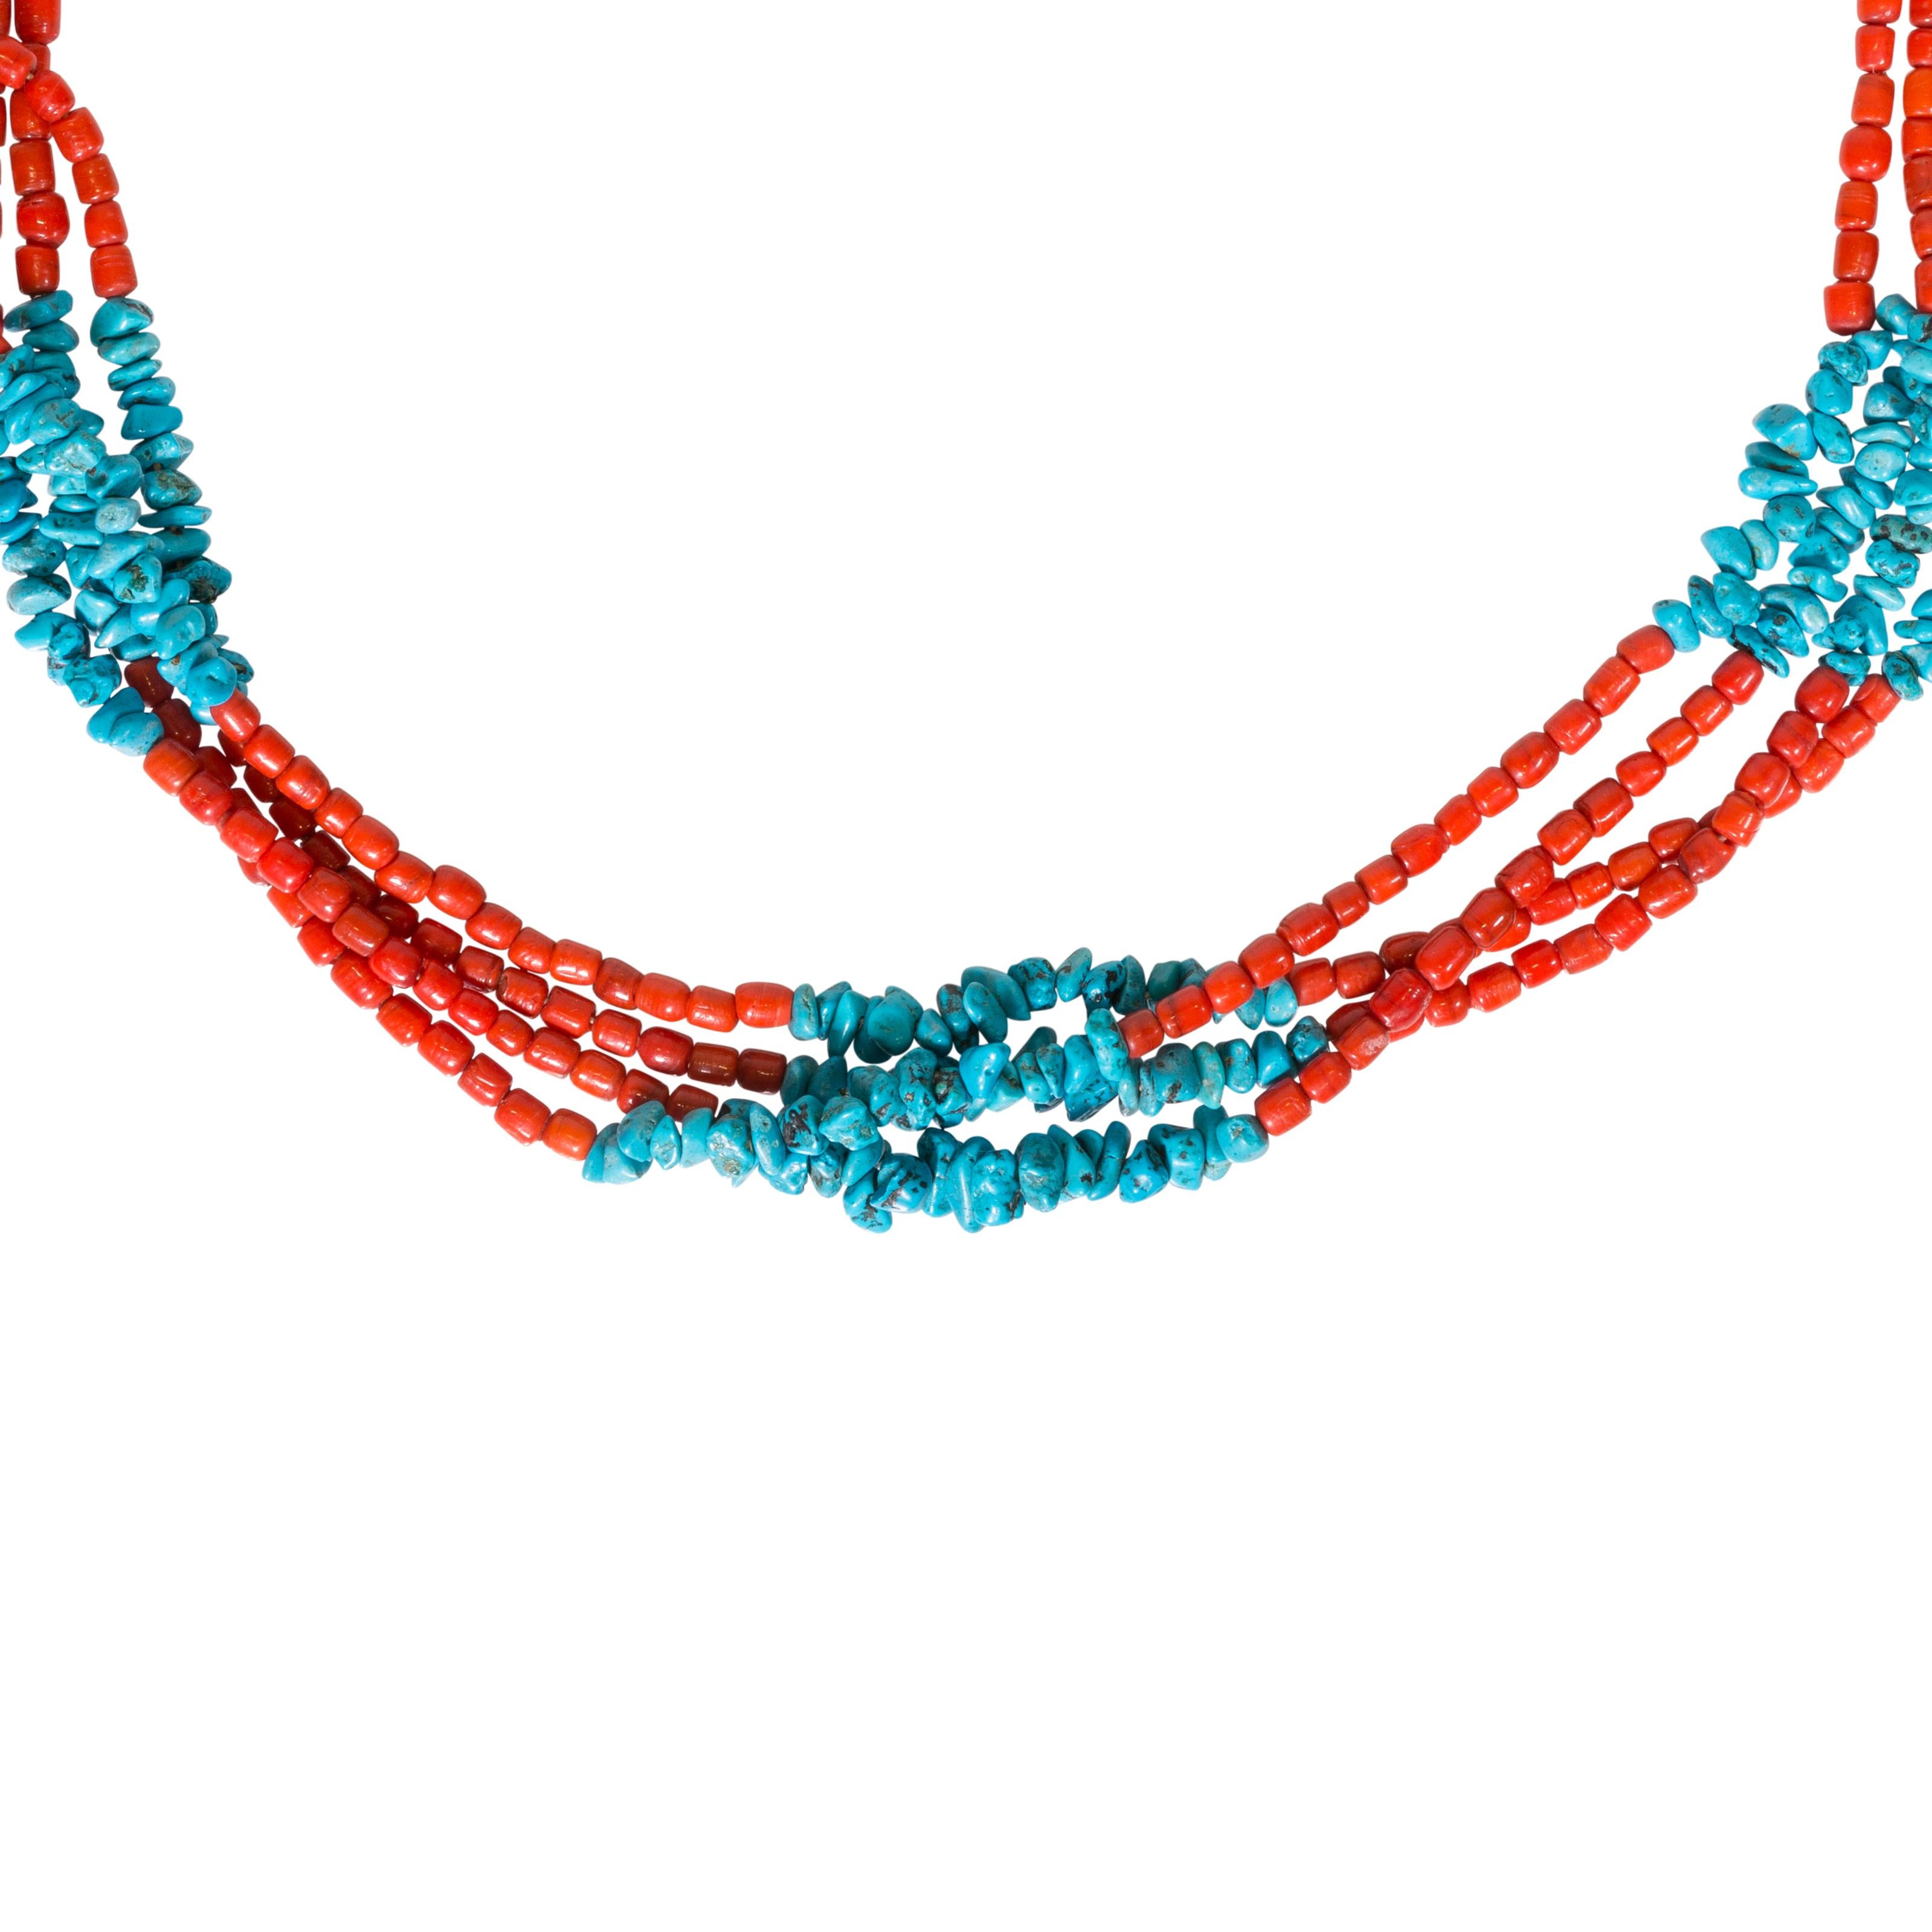 Vierreihige Santa-Domingo-Halskette mit atemberaubenden roten Jaspisperlen und türkisfarbenen Kieselsteinen.

ZEITRAUM: Nach 1950
URSPRUNG: Santa Domingo, Südwesten
GRÖSSE: 35